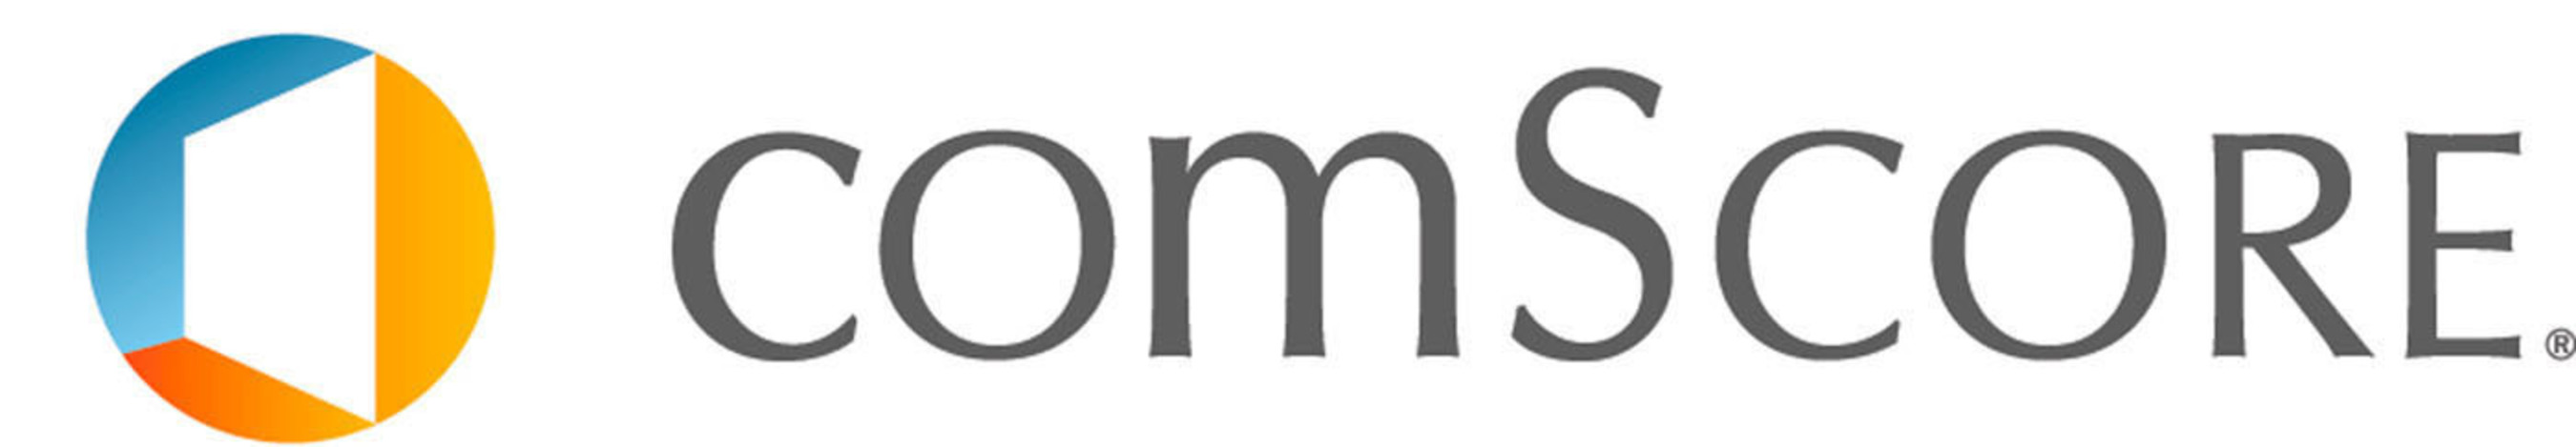 comScore logo.